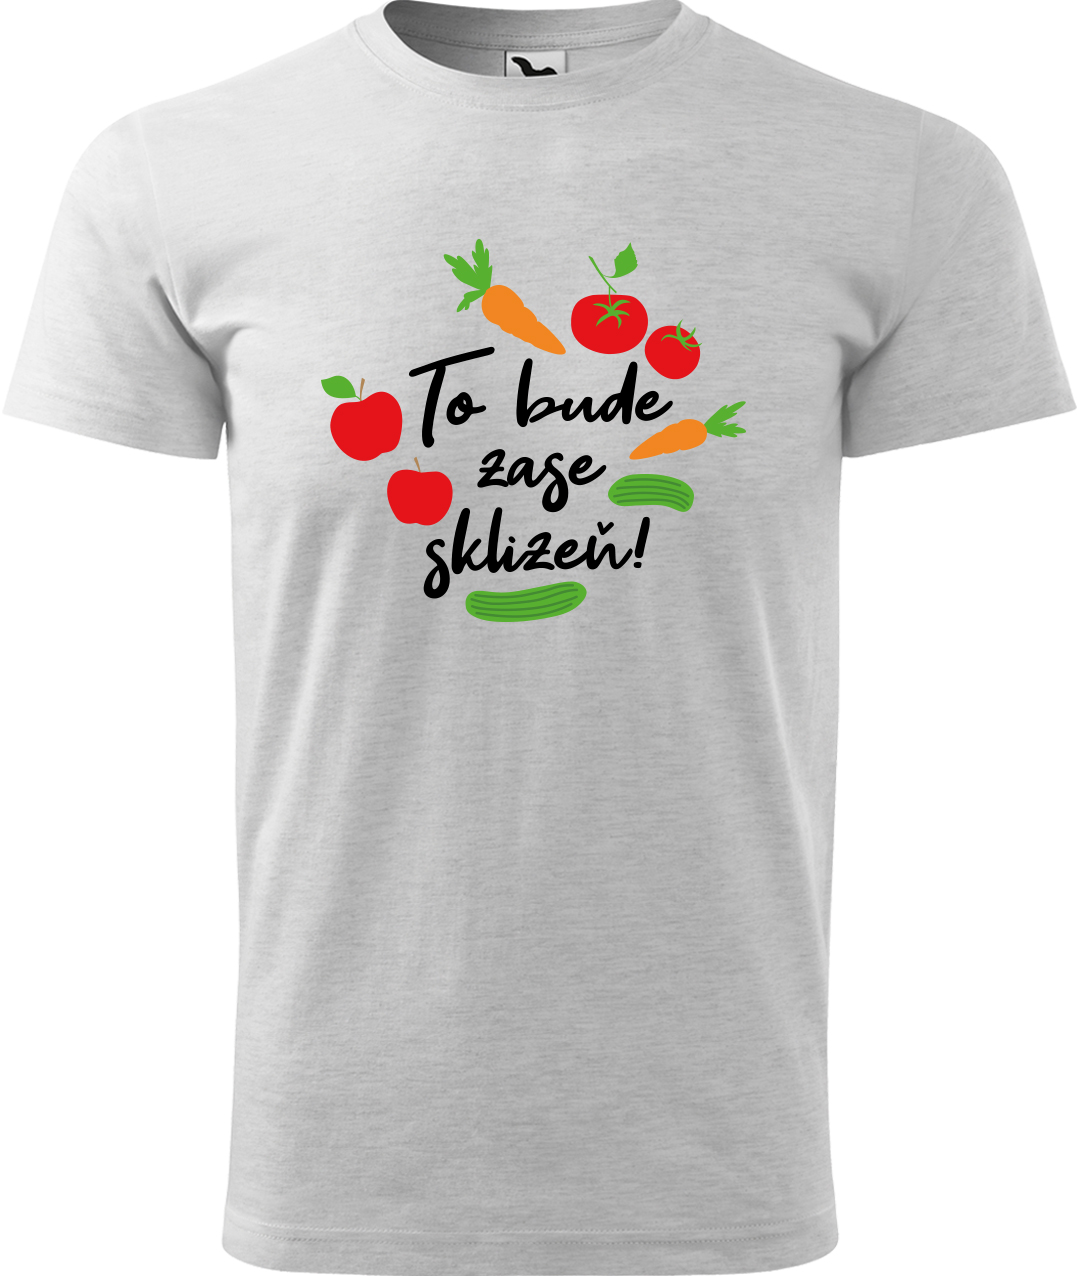 Tričko pro zahradníka - To bude zase sklizeň! Velikost: XL, Barva: Světle šedý melír (03), Střih: pánský